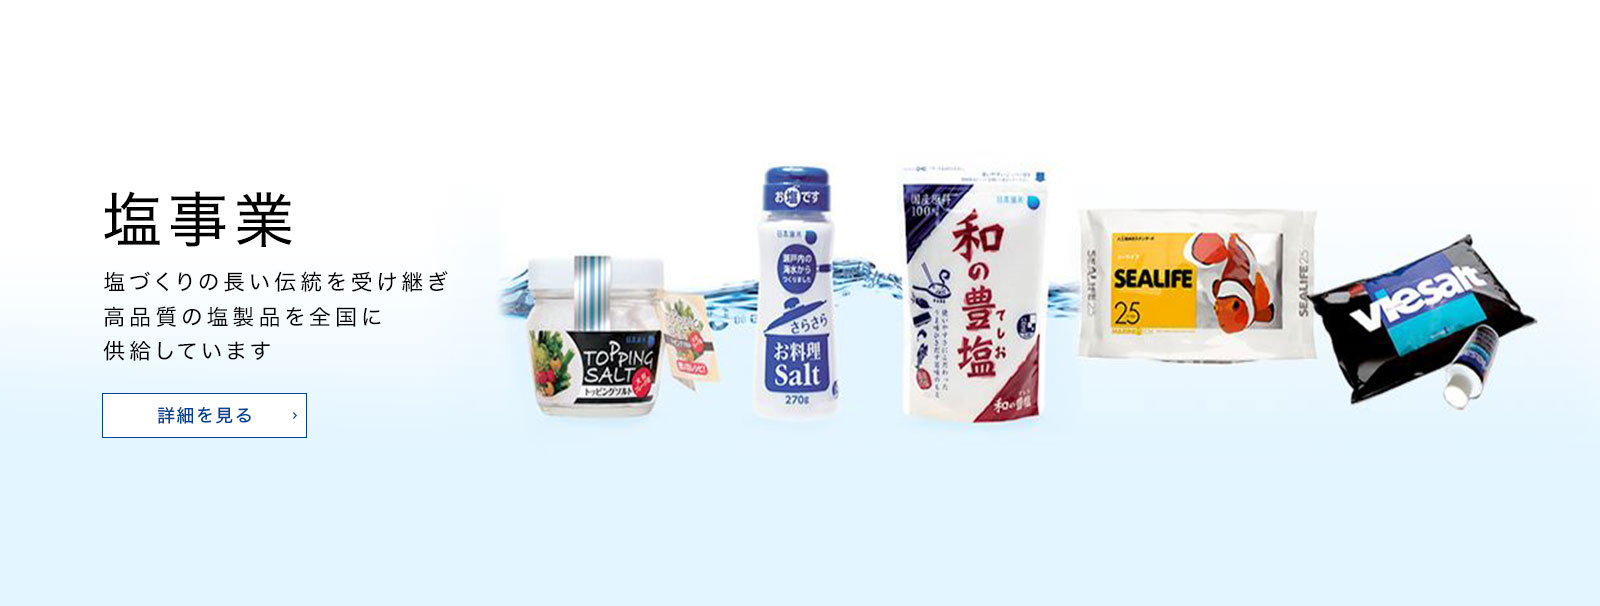 塩事業 塩づくりの長い伝統を受け継ぎ高品質の塩製品を全国に供給しています